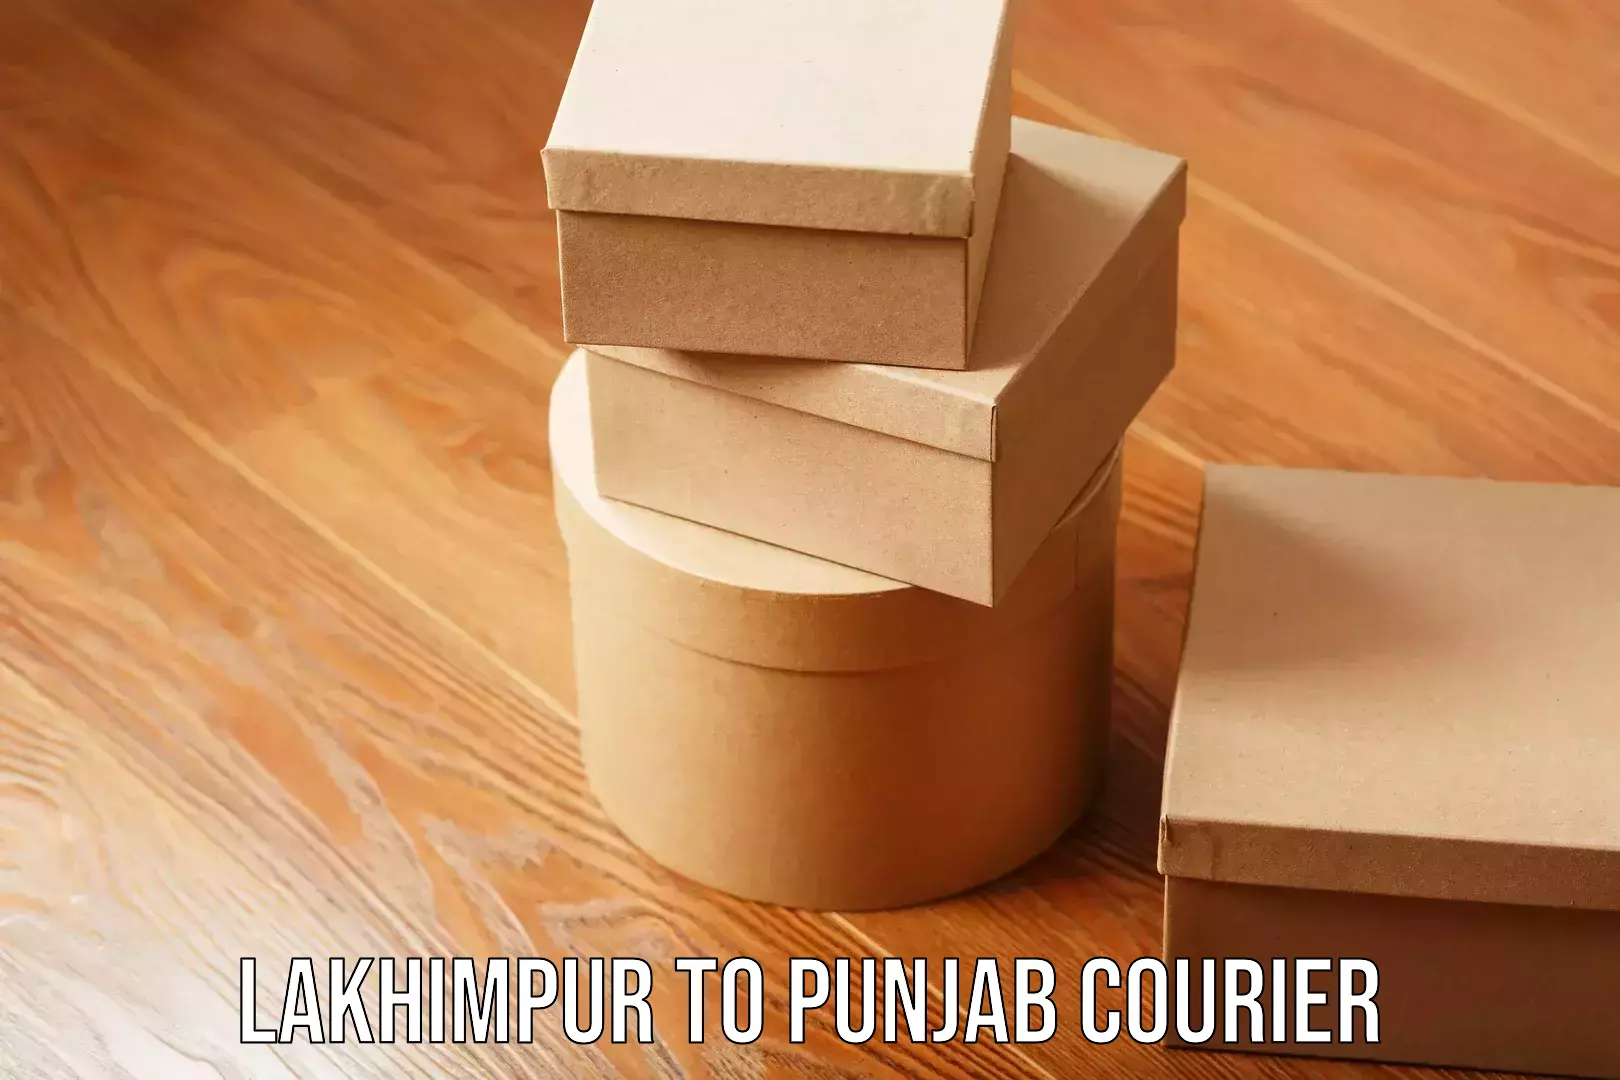 Household goods transport service Lakhimpur to Punjab